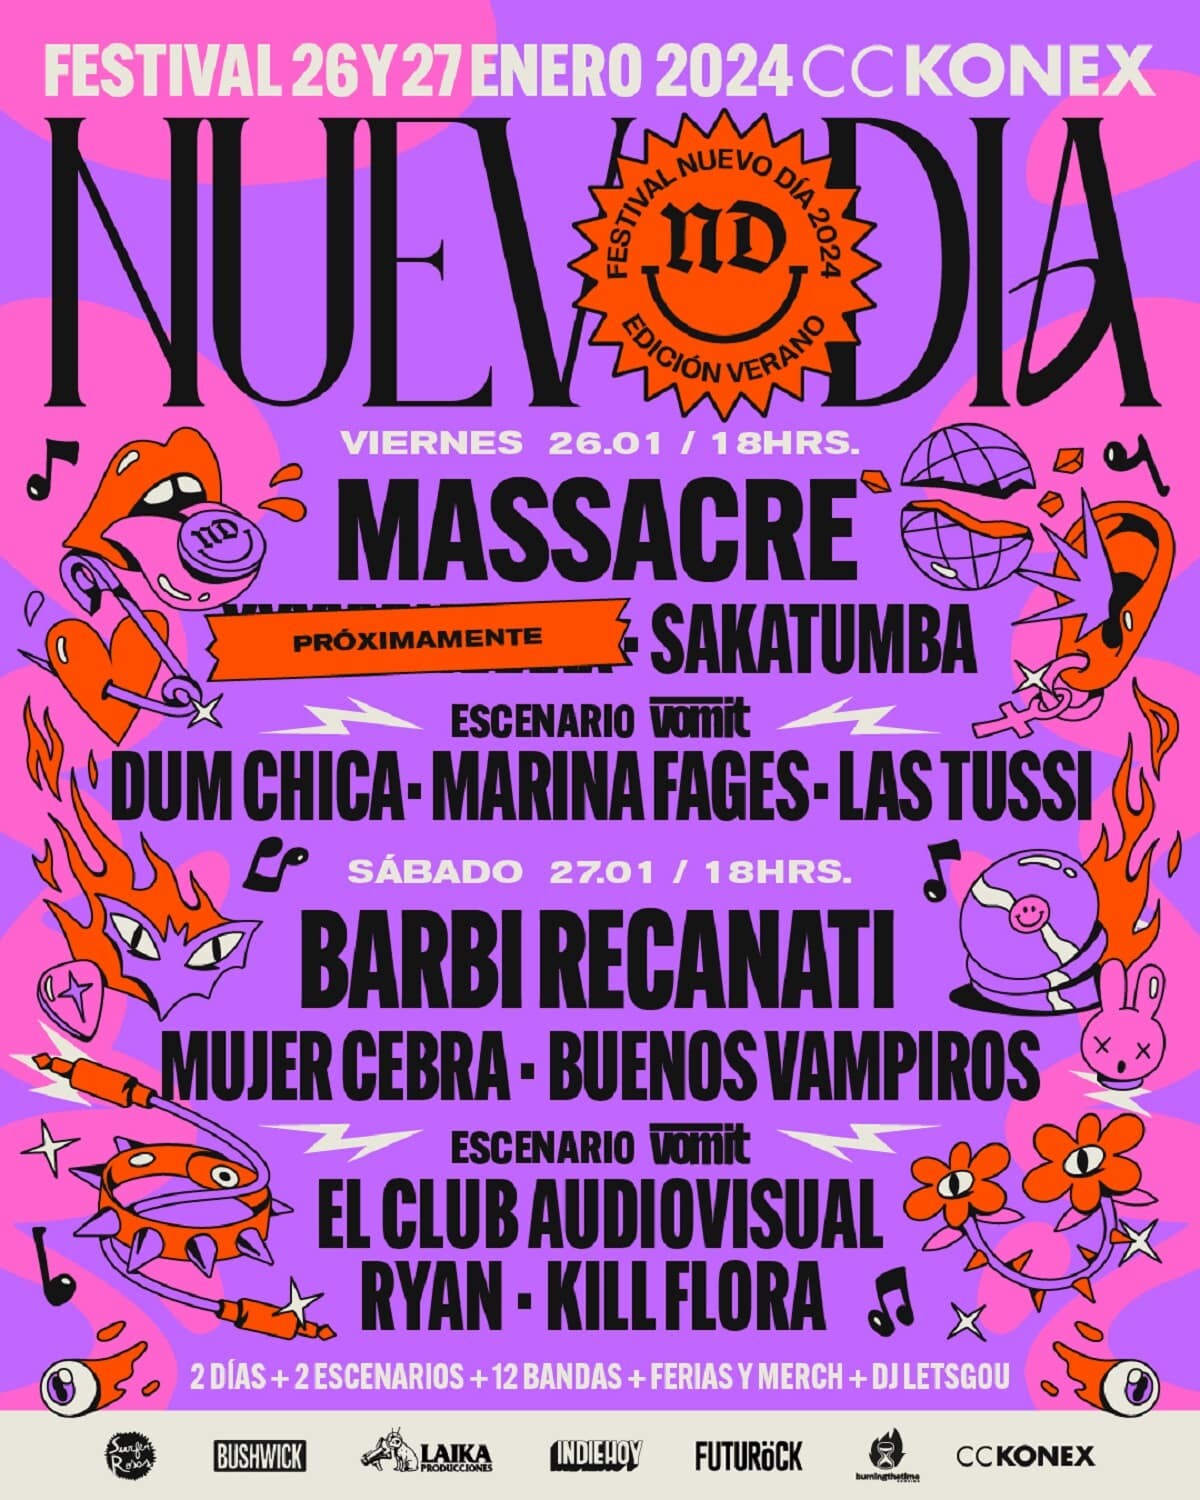 Festival Nuevo Día 2024 anuncia su line-up